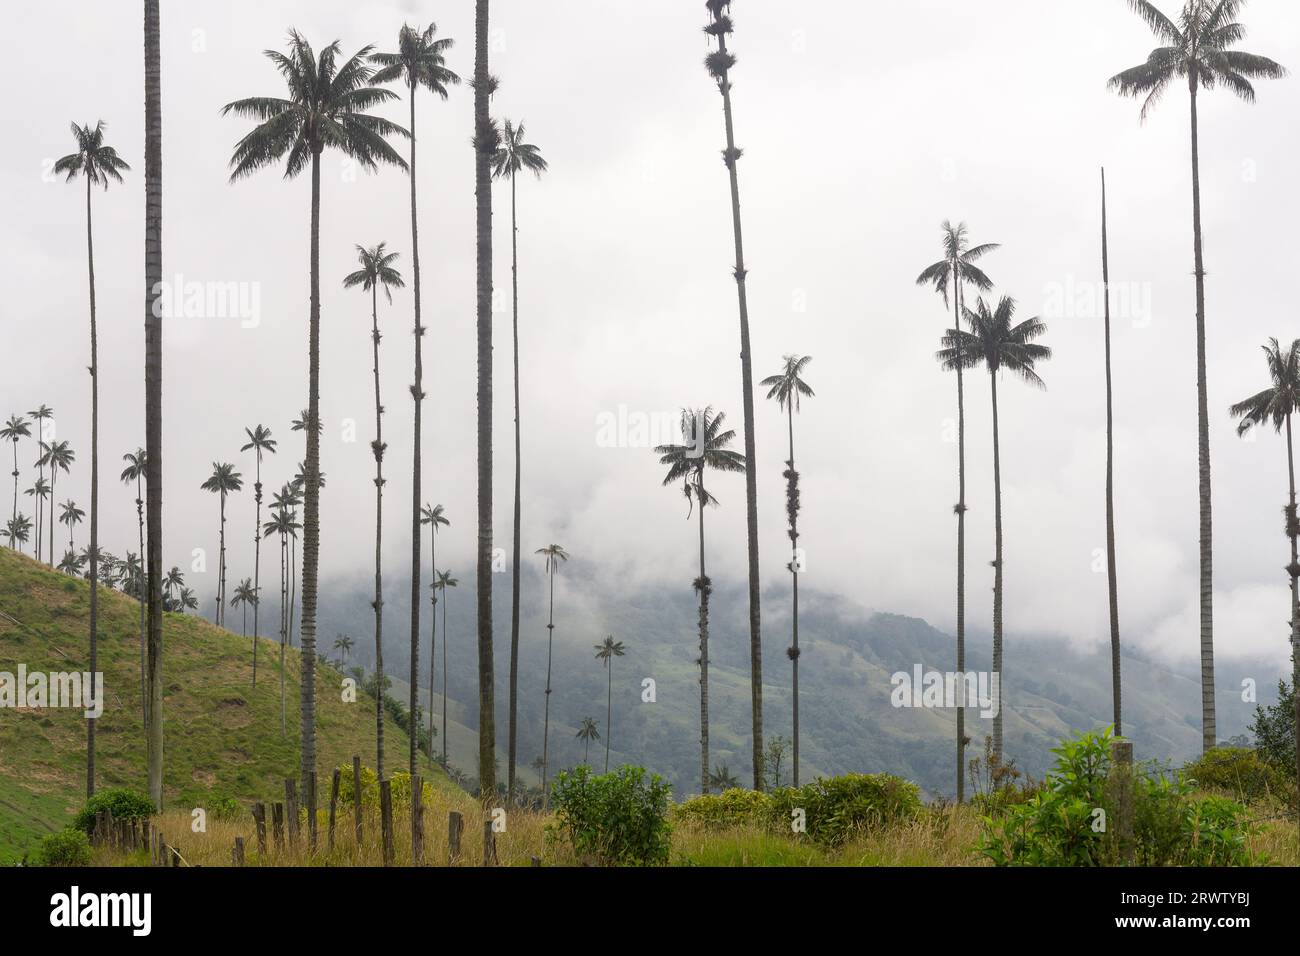 Vallée de Cocora dans le parc national de Los Nevados, Colombie - le palmier à cire est l'arbre national colombien et une espèce menacée de disparition. Banque D'Images